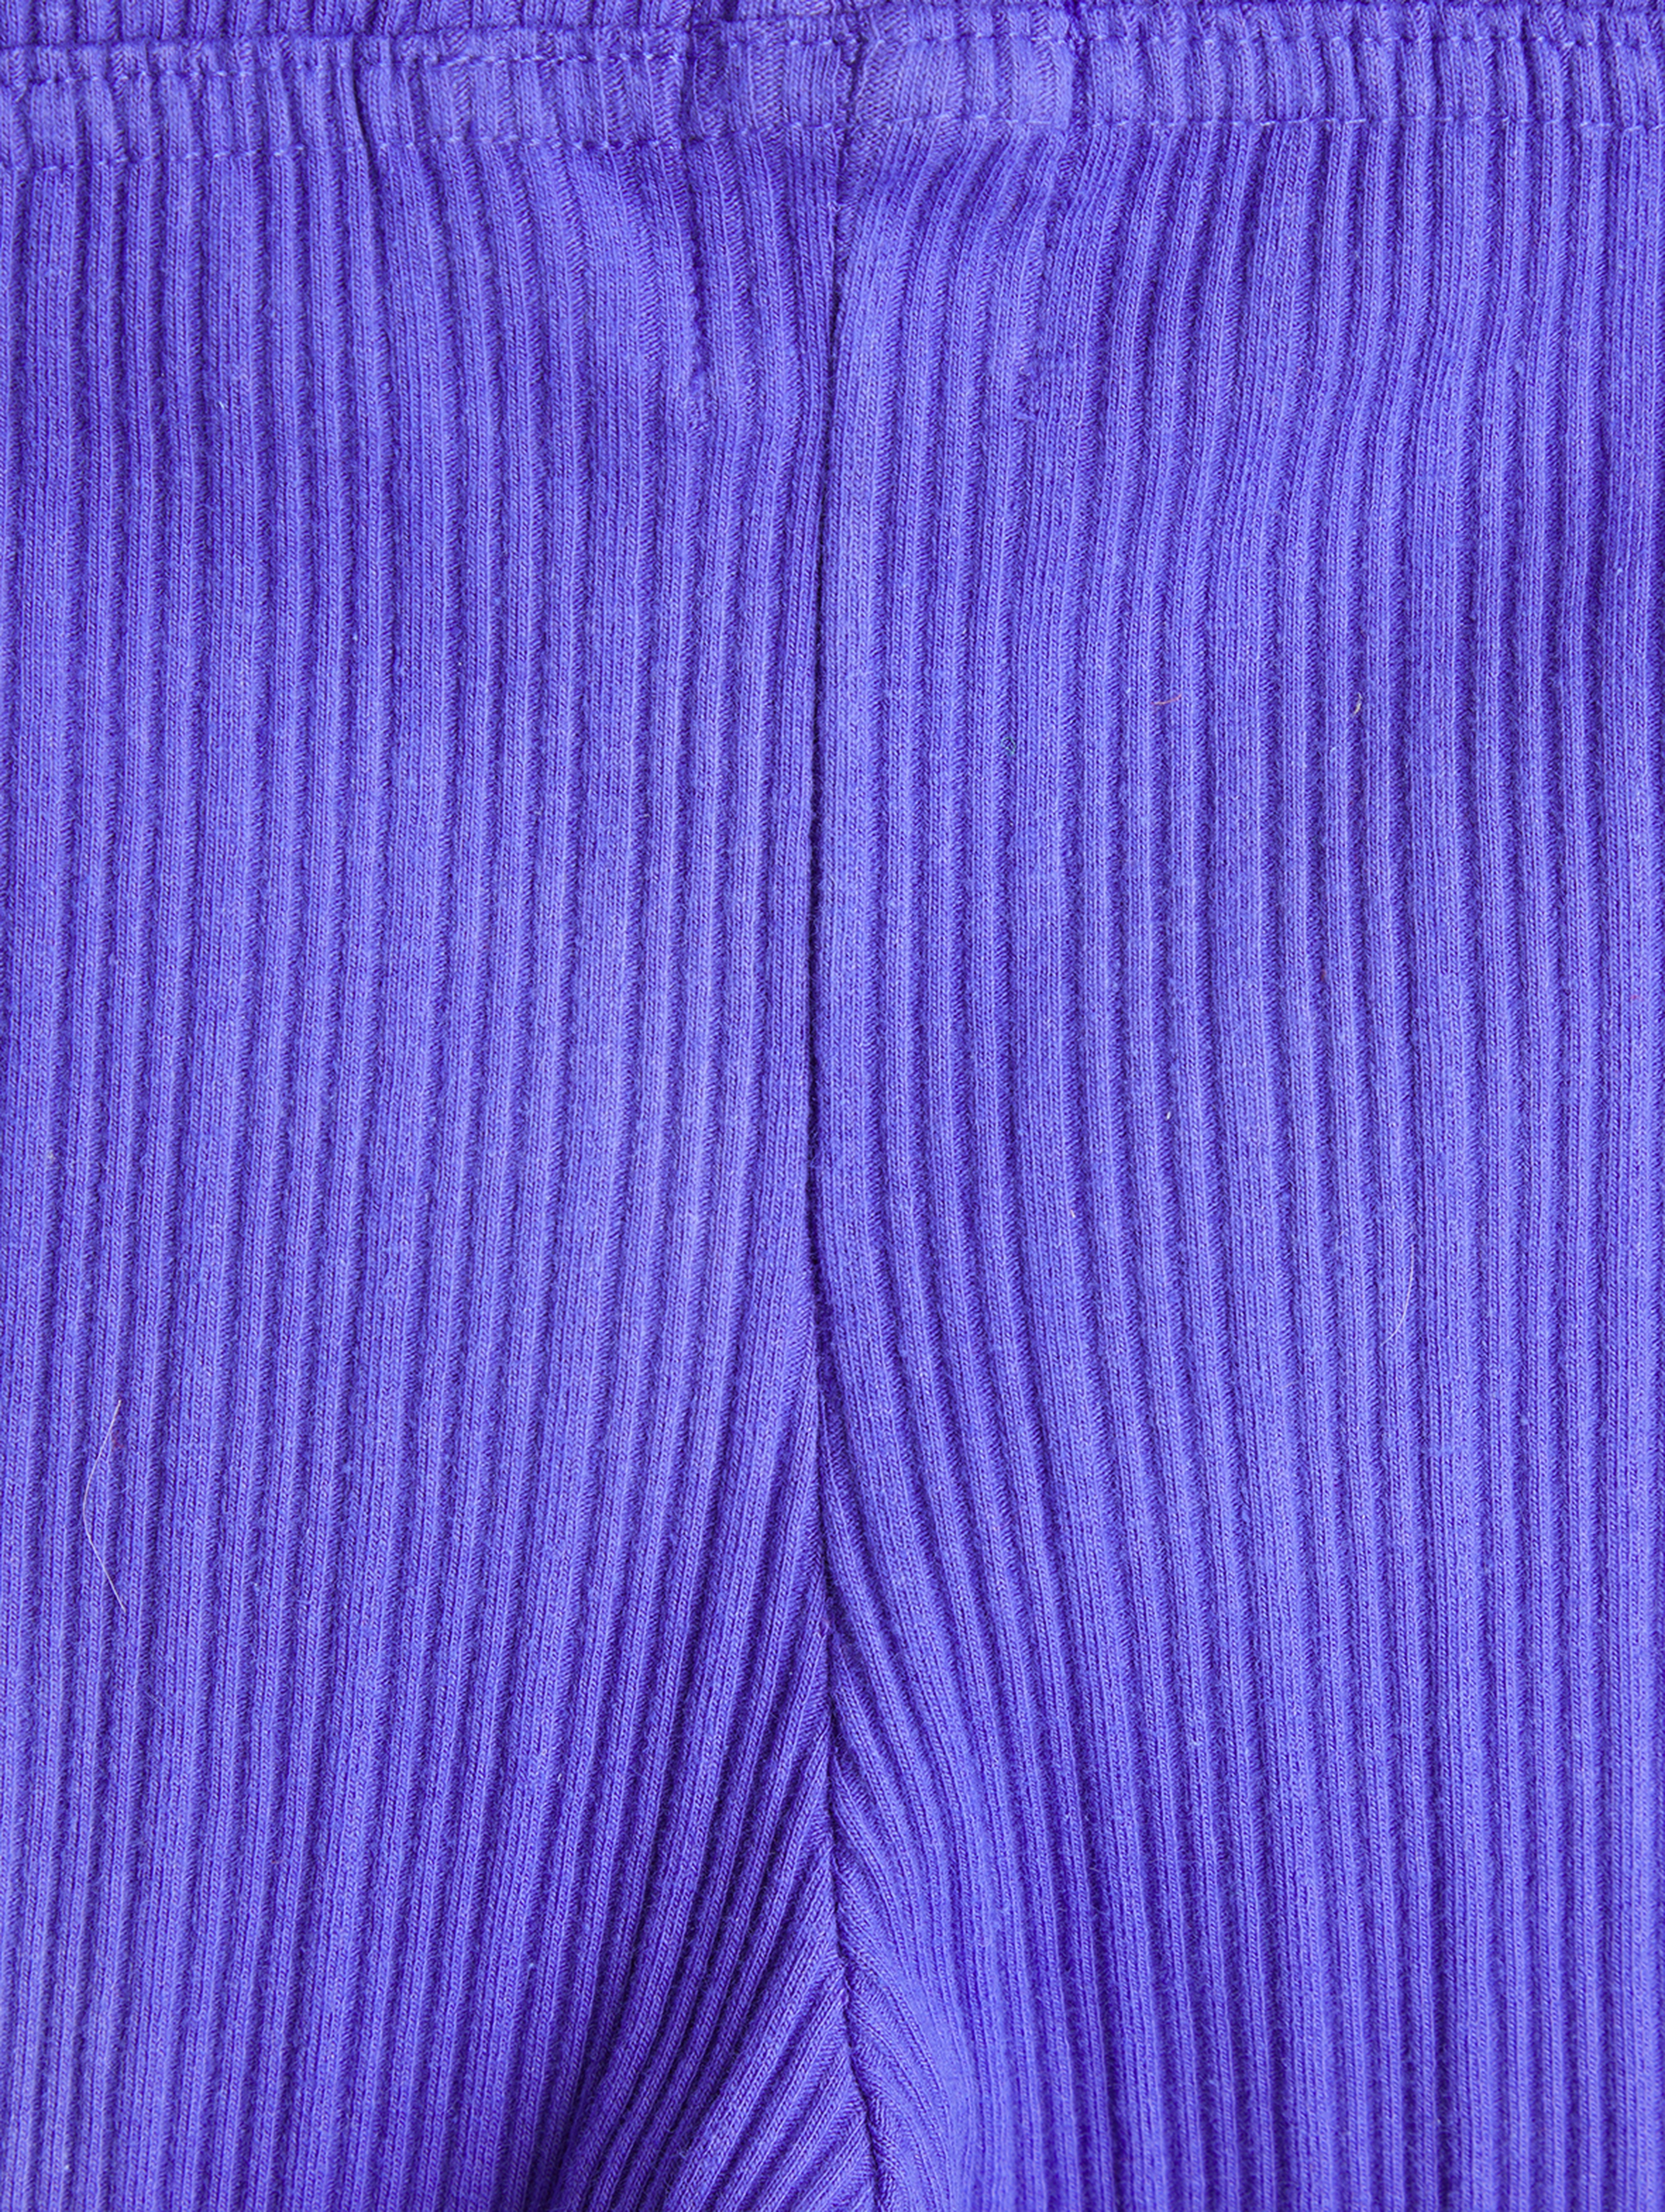 Spodnie flare dla dziewczynki - fioletowe w prążki - Limited Edition